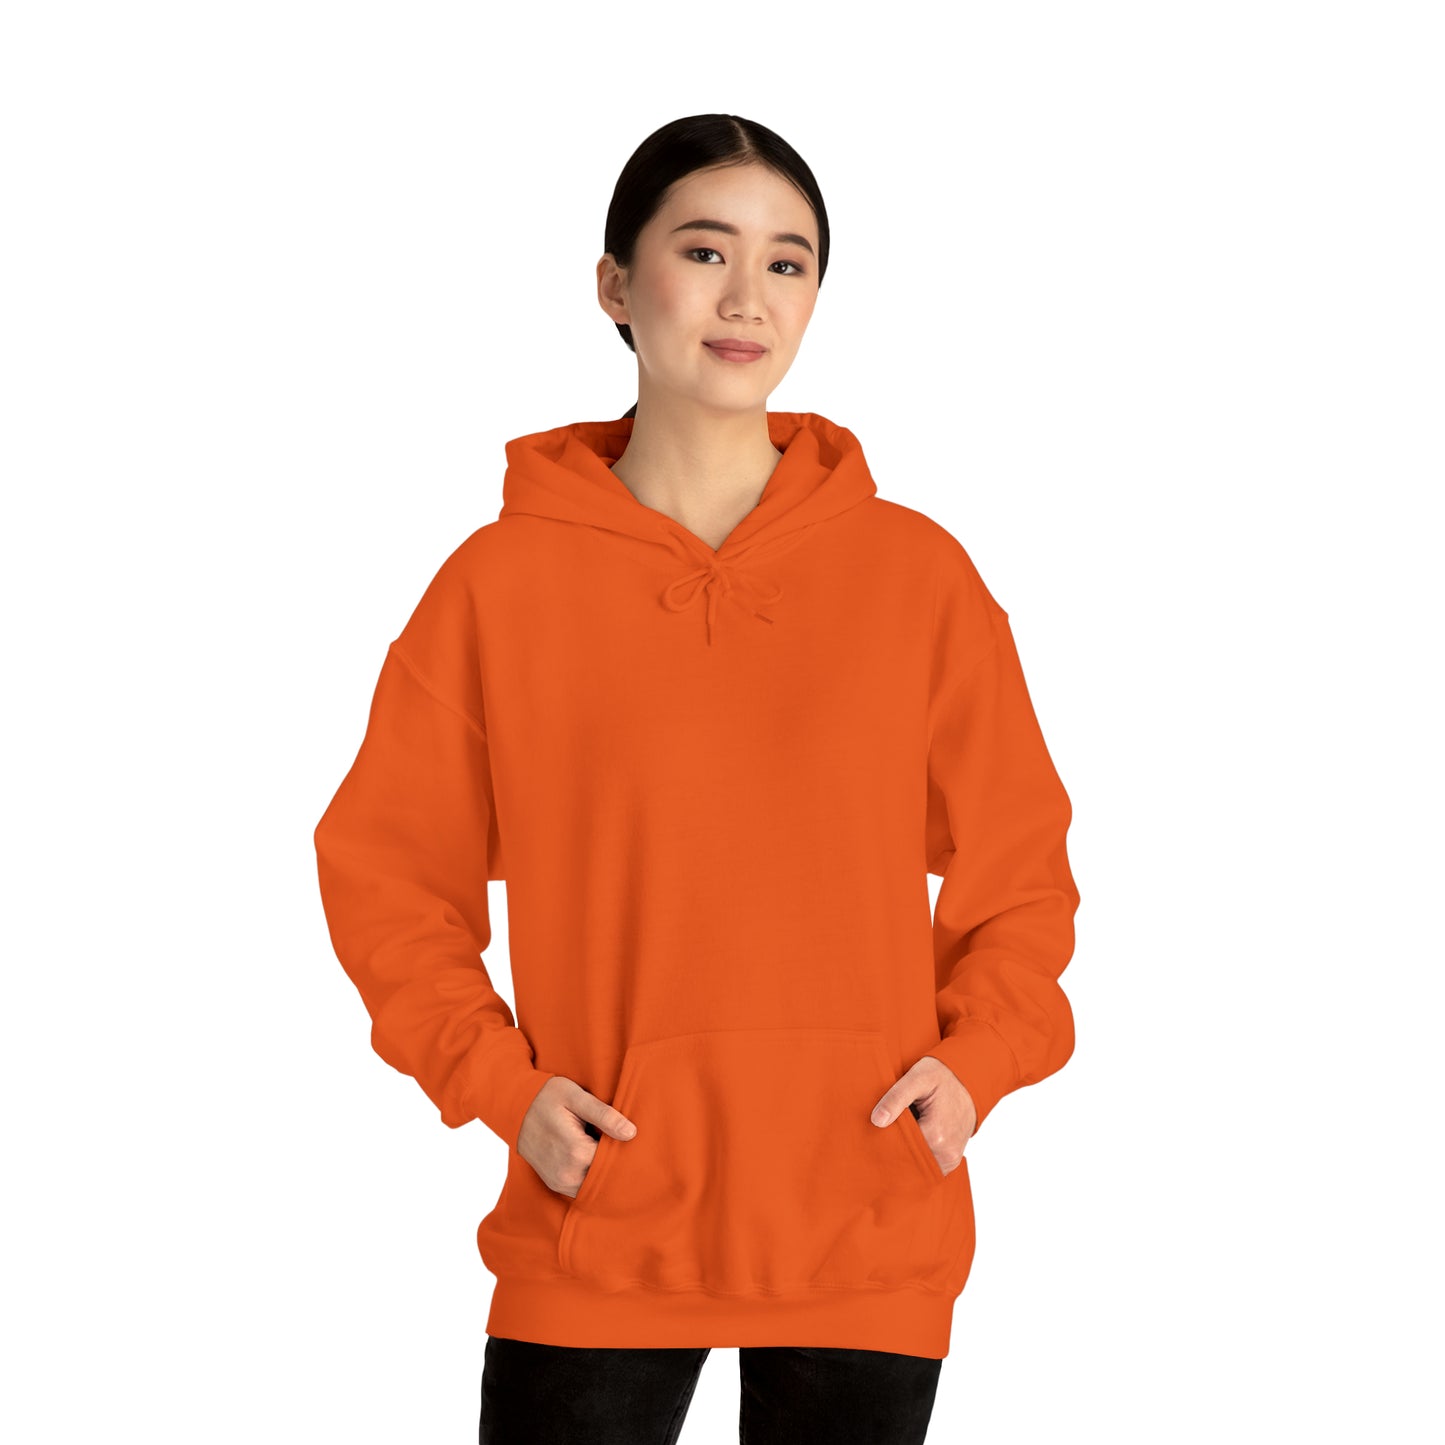 Feel the Fear Motivational Unisex Heavy Blend™ Hooded Sweatshirt